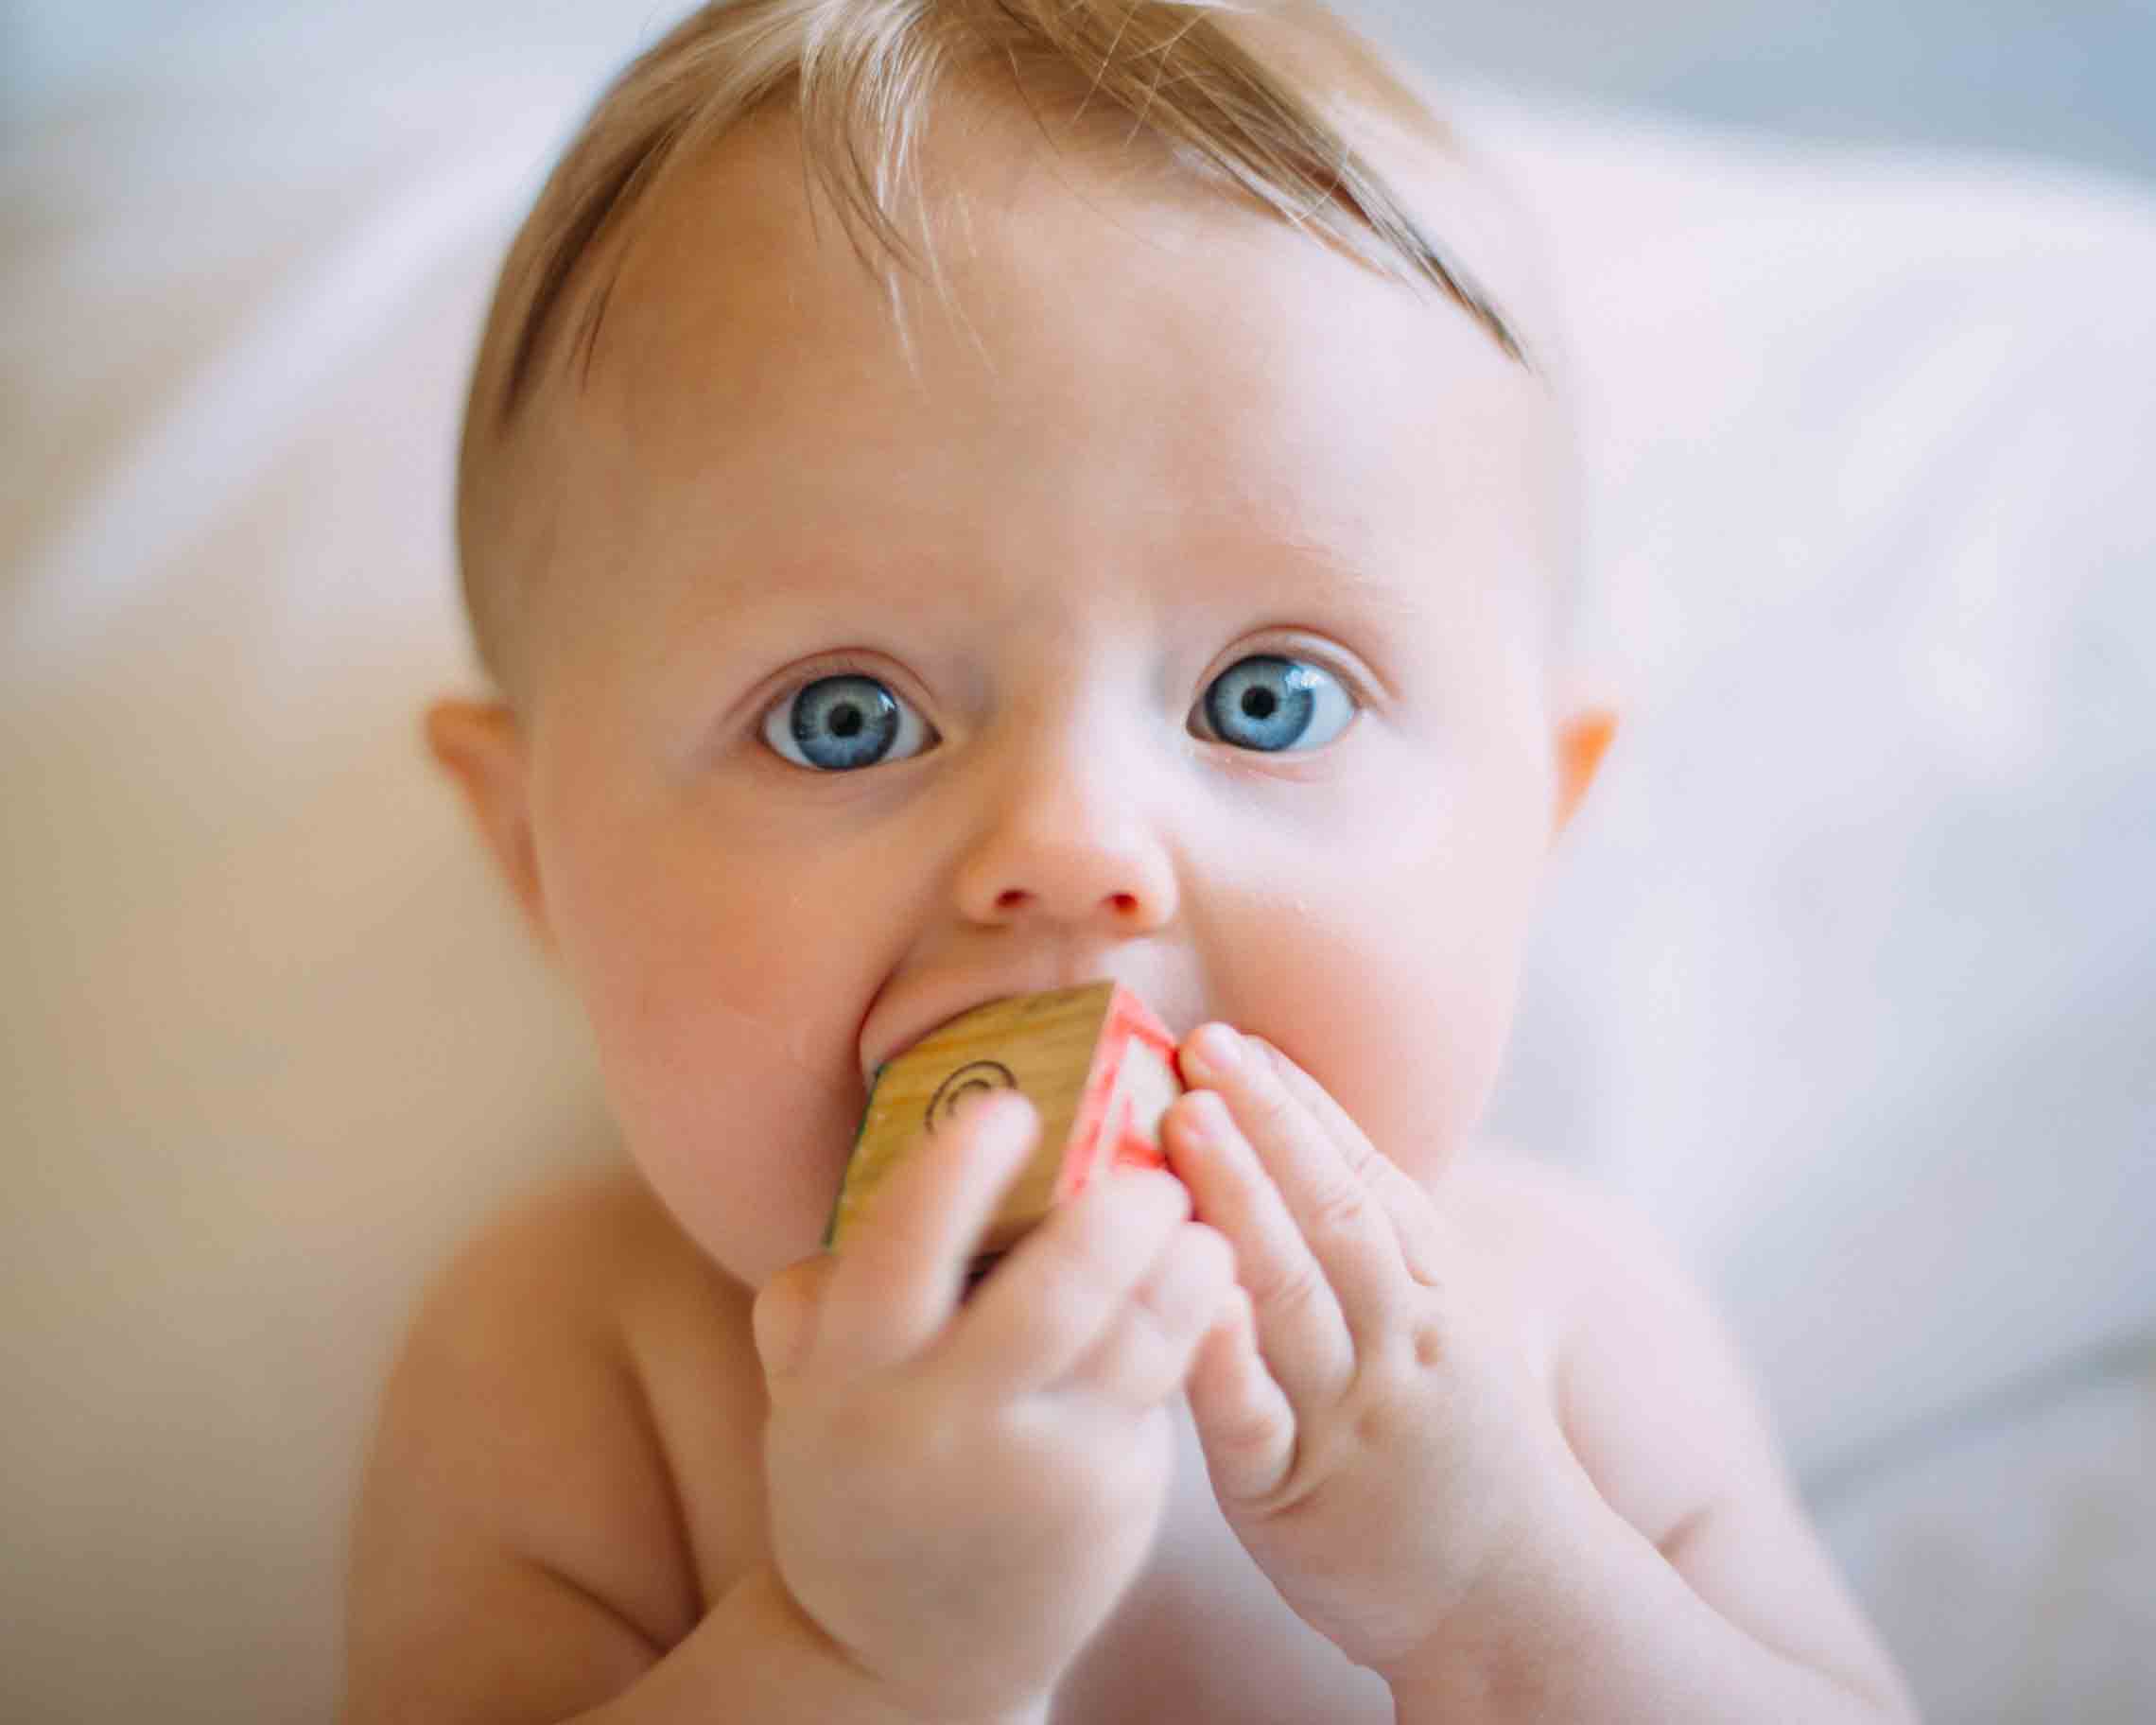 Baby steckt sich Holzbaustein in den Mund - kein Problem für das kindliche Immunsystem.